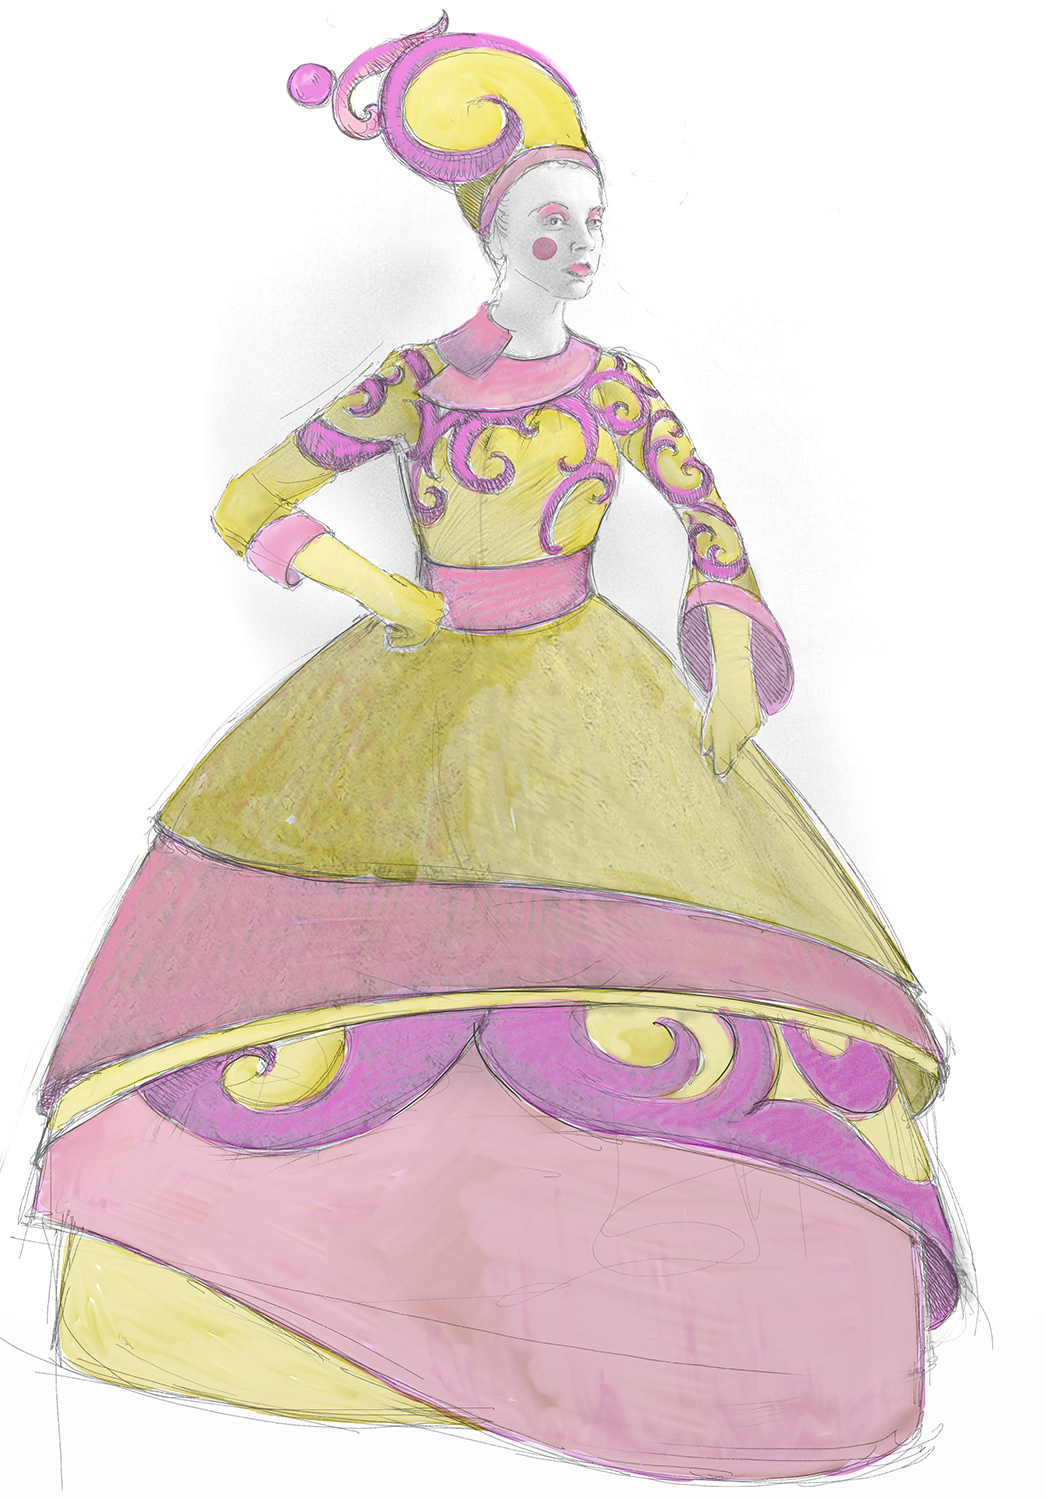 cenerentola giocchino rossini Rossini Costume Design  set design  Domenico Franchi paolo bosisio costume teatro scenografia